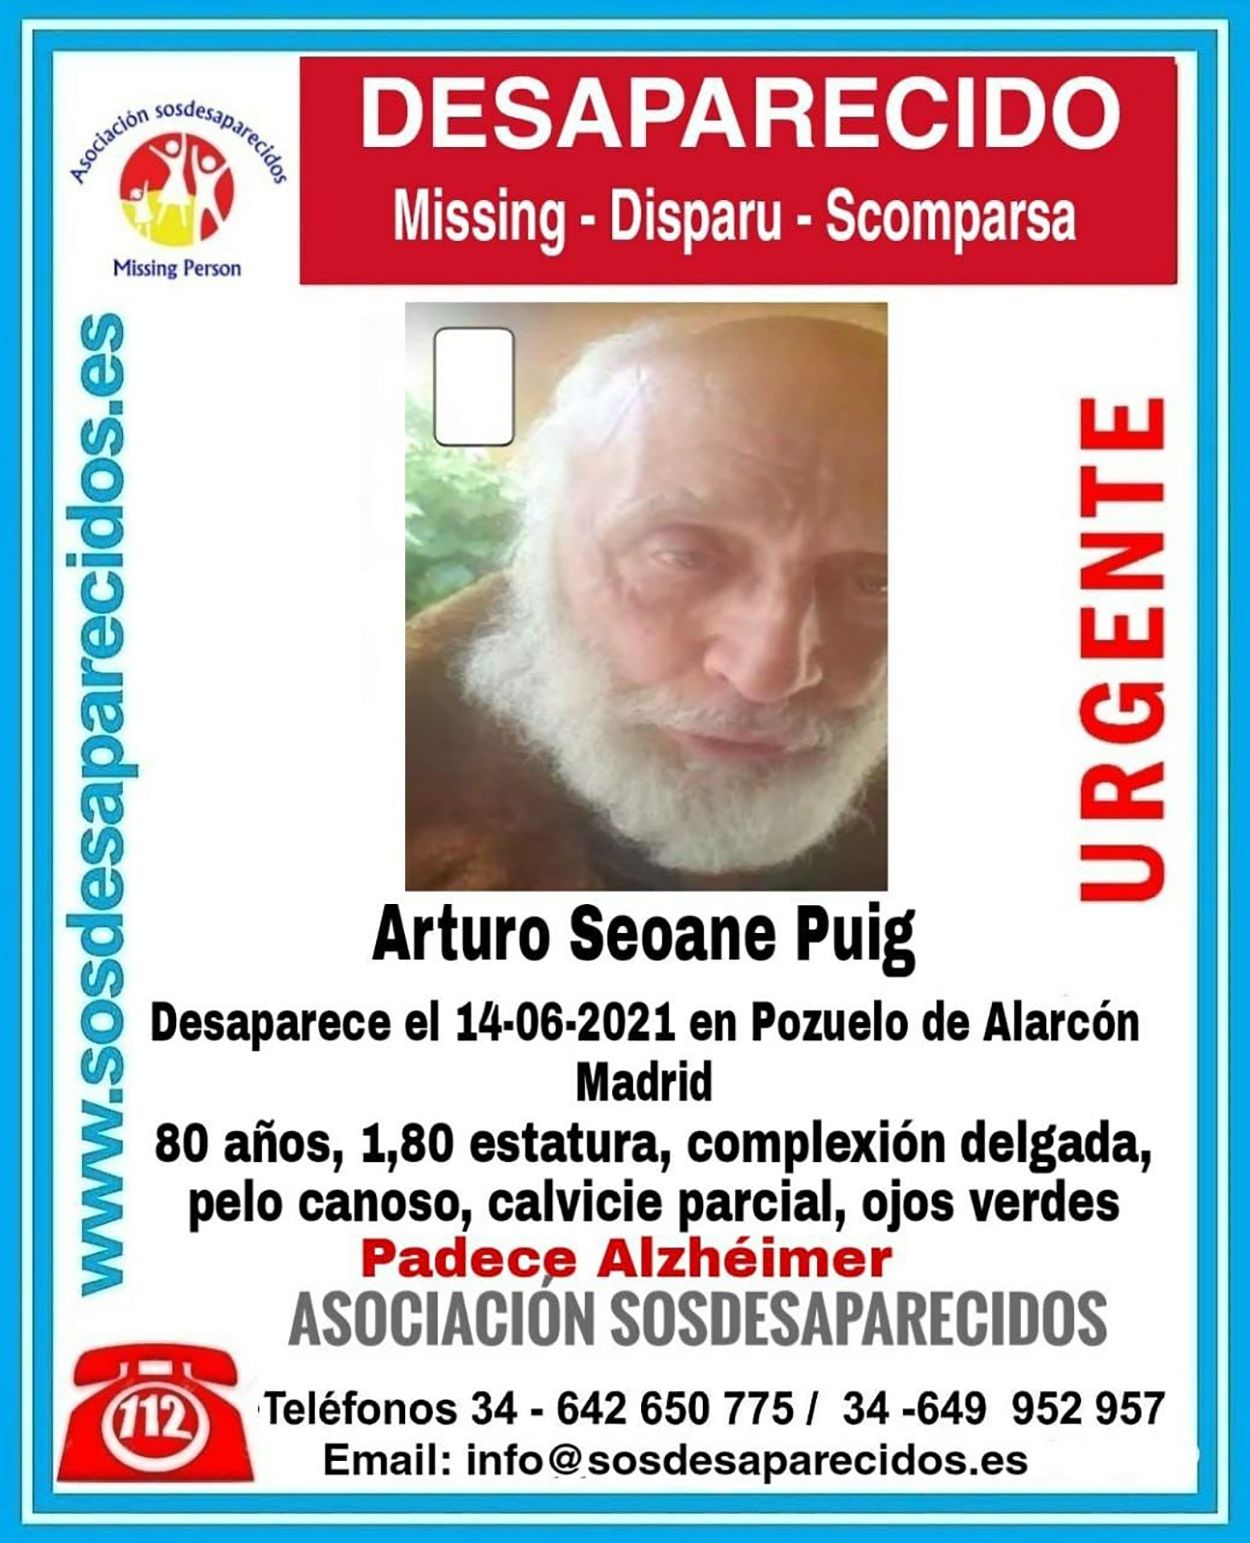 La Policía busca en Madrid a un hombre con alzhéimer desaparecido desde el lunes